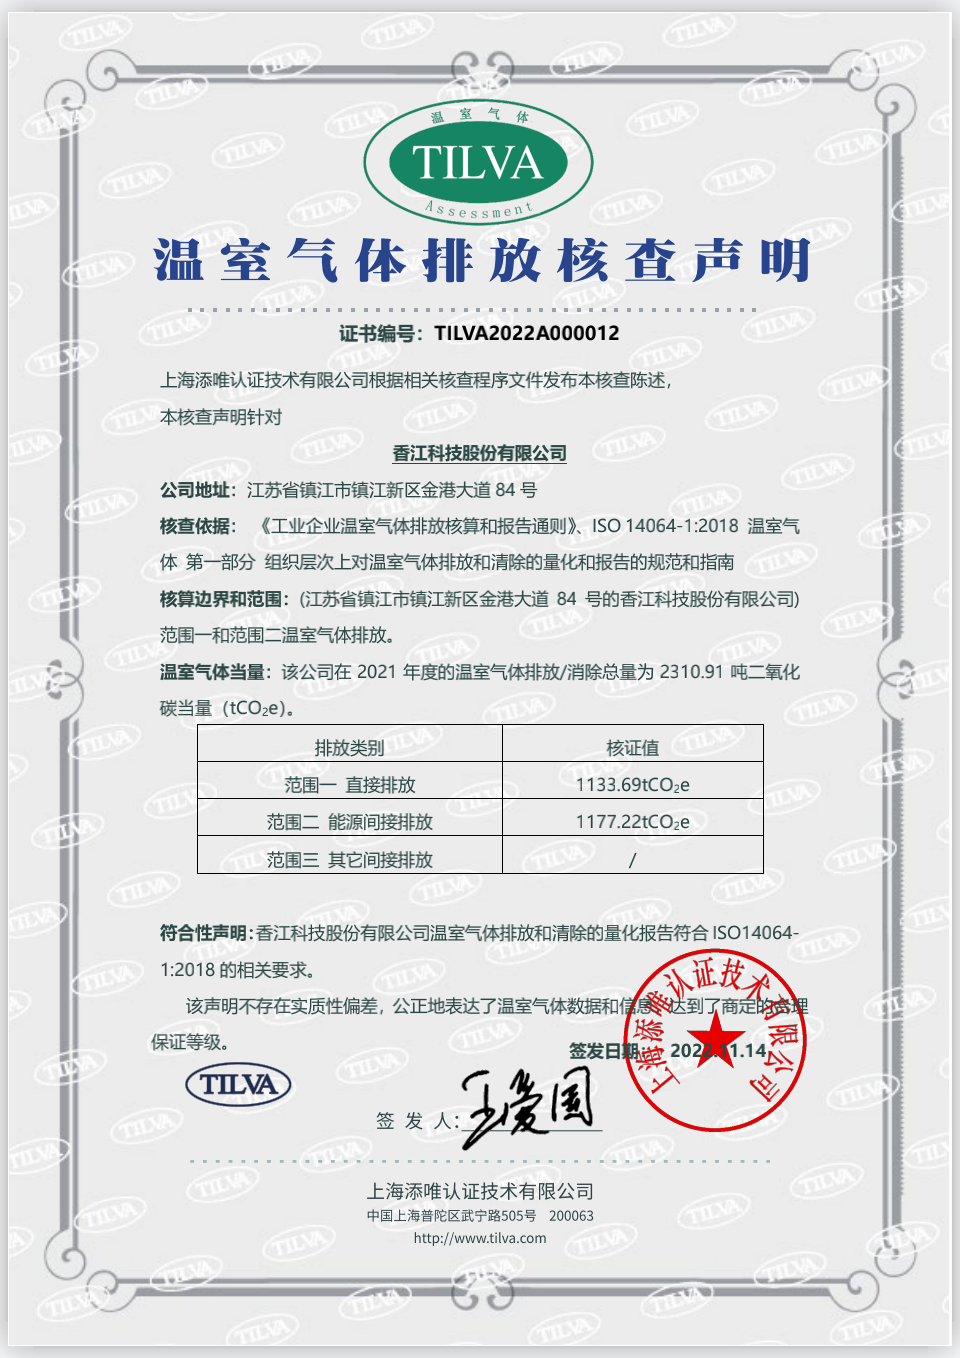 香江科技温室气体排放声明证书